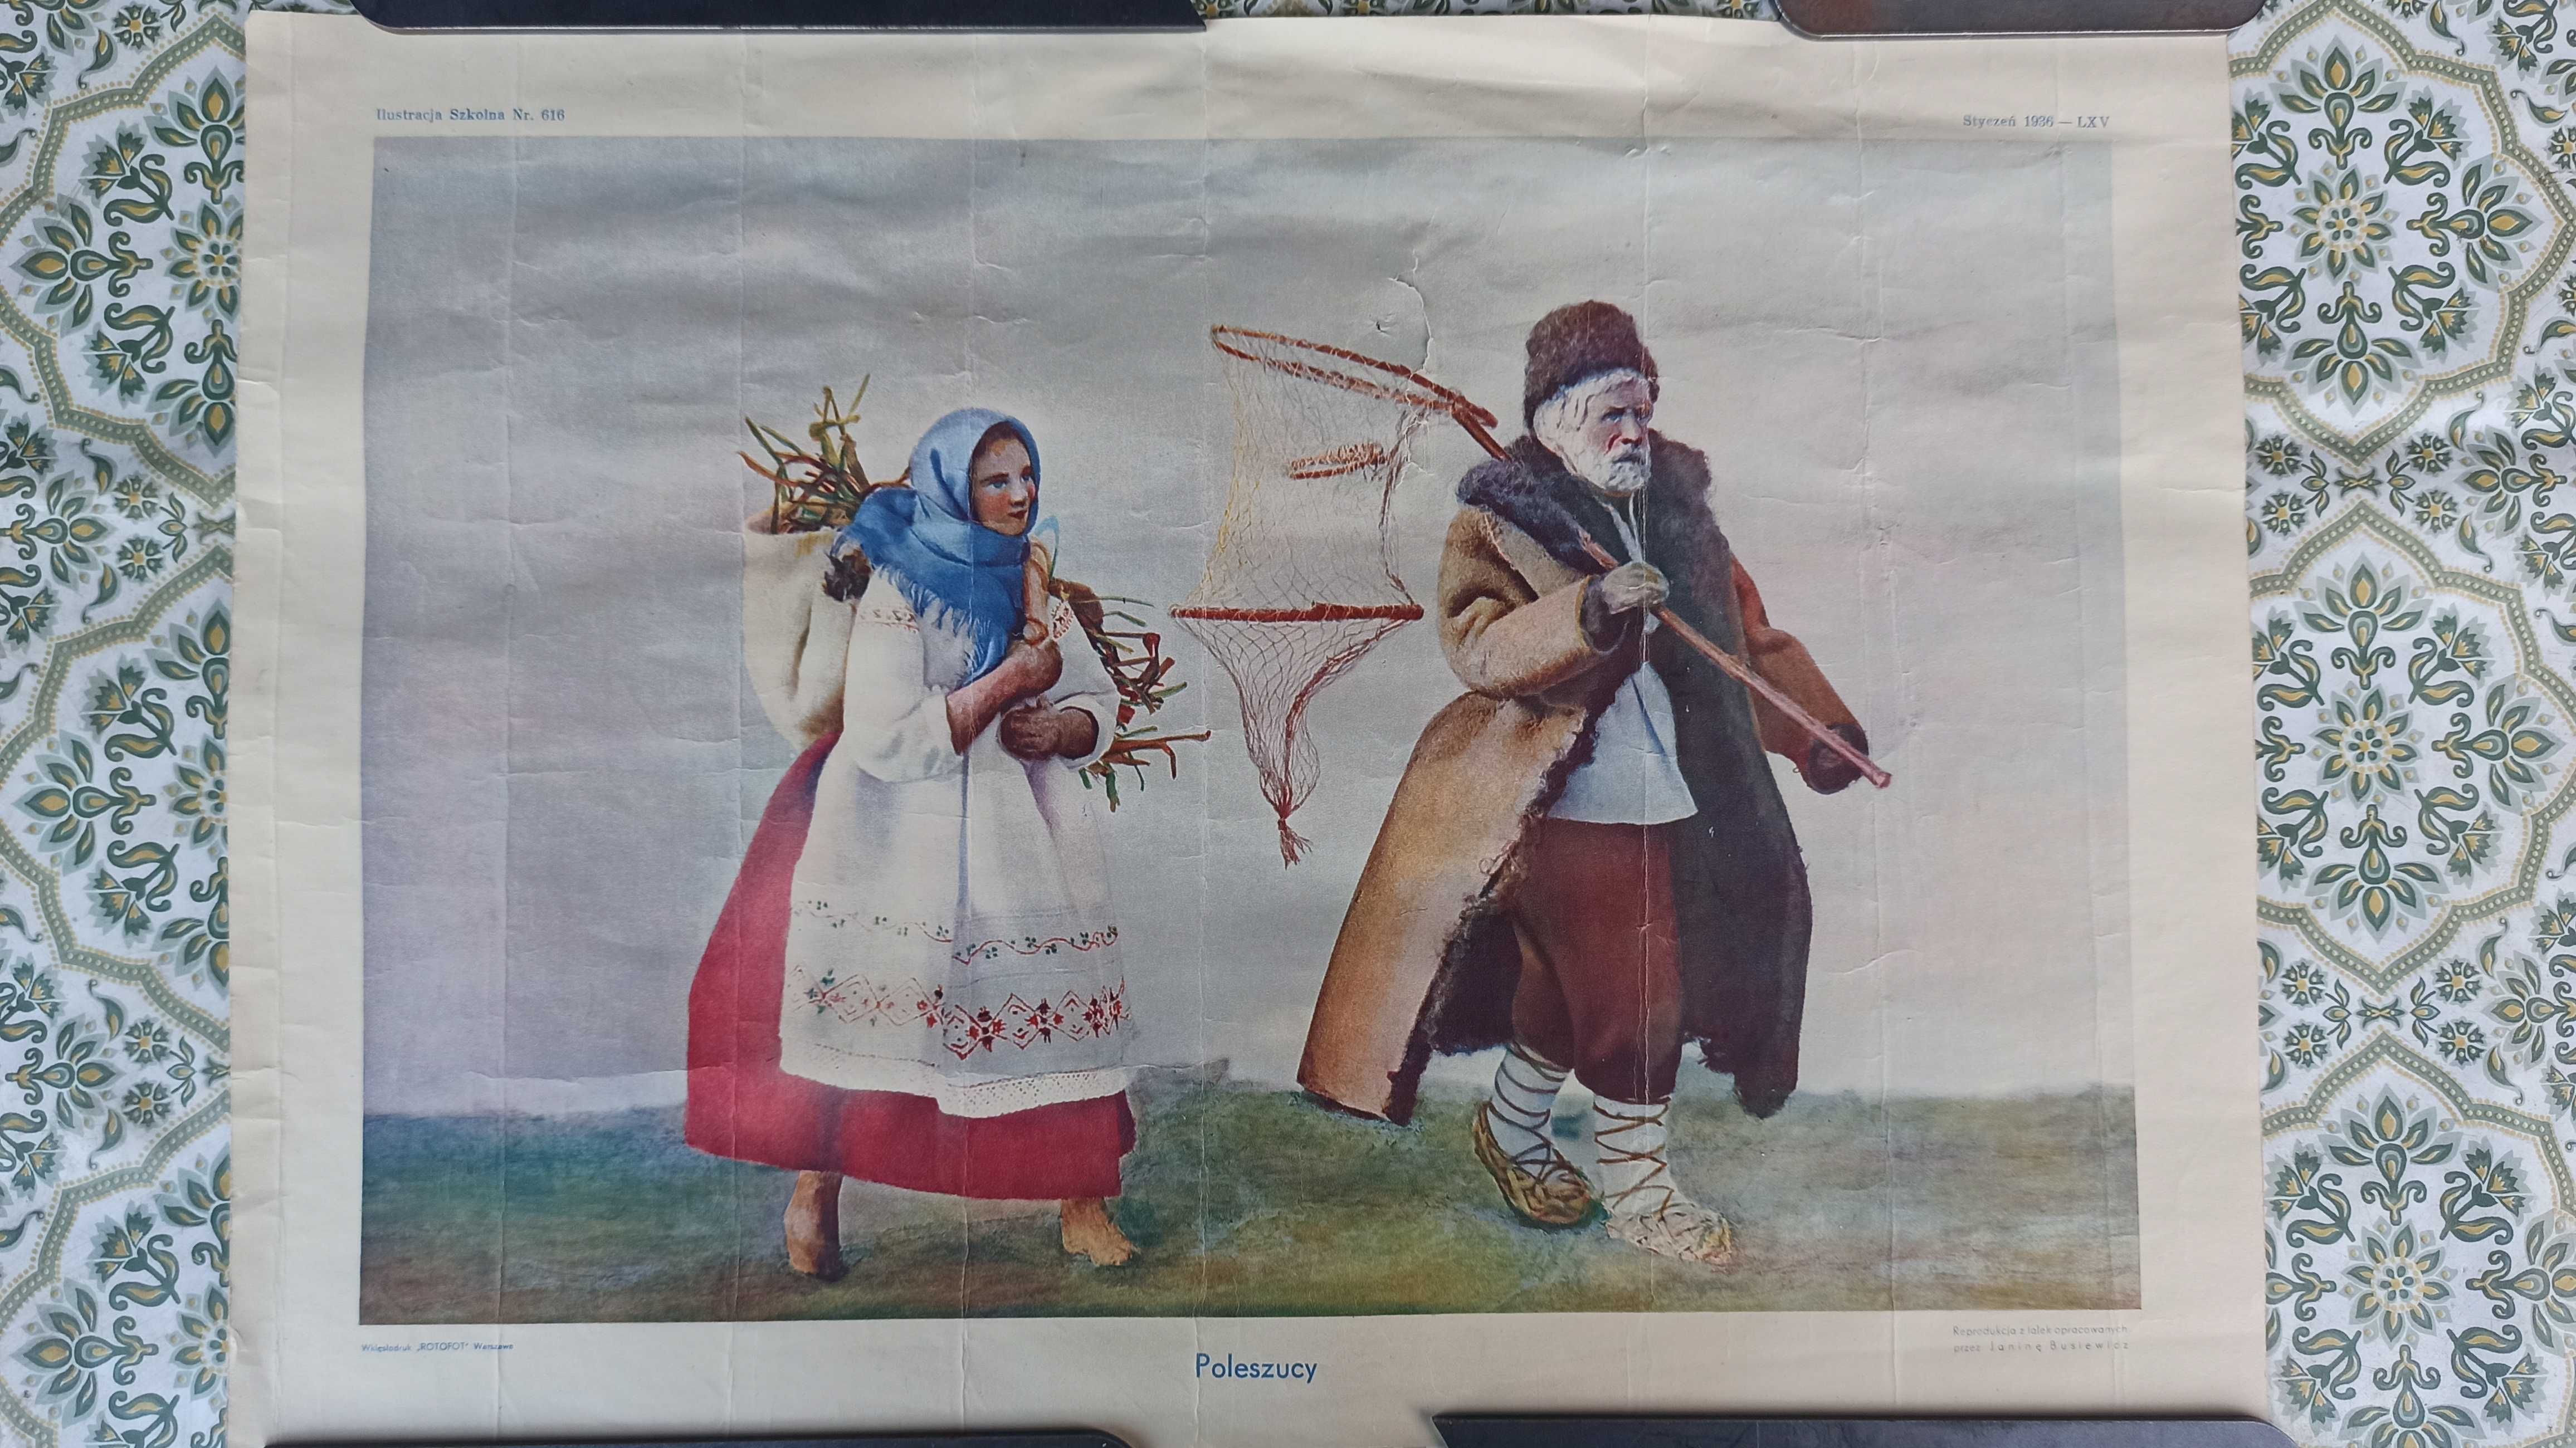 Przedwojenny plakat "Stroje Ludowe" oraz " Poleszucy", "Górale"